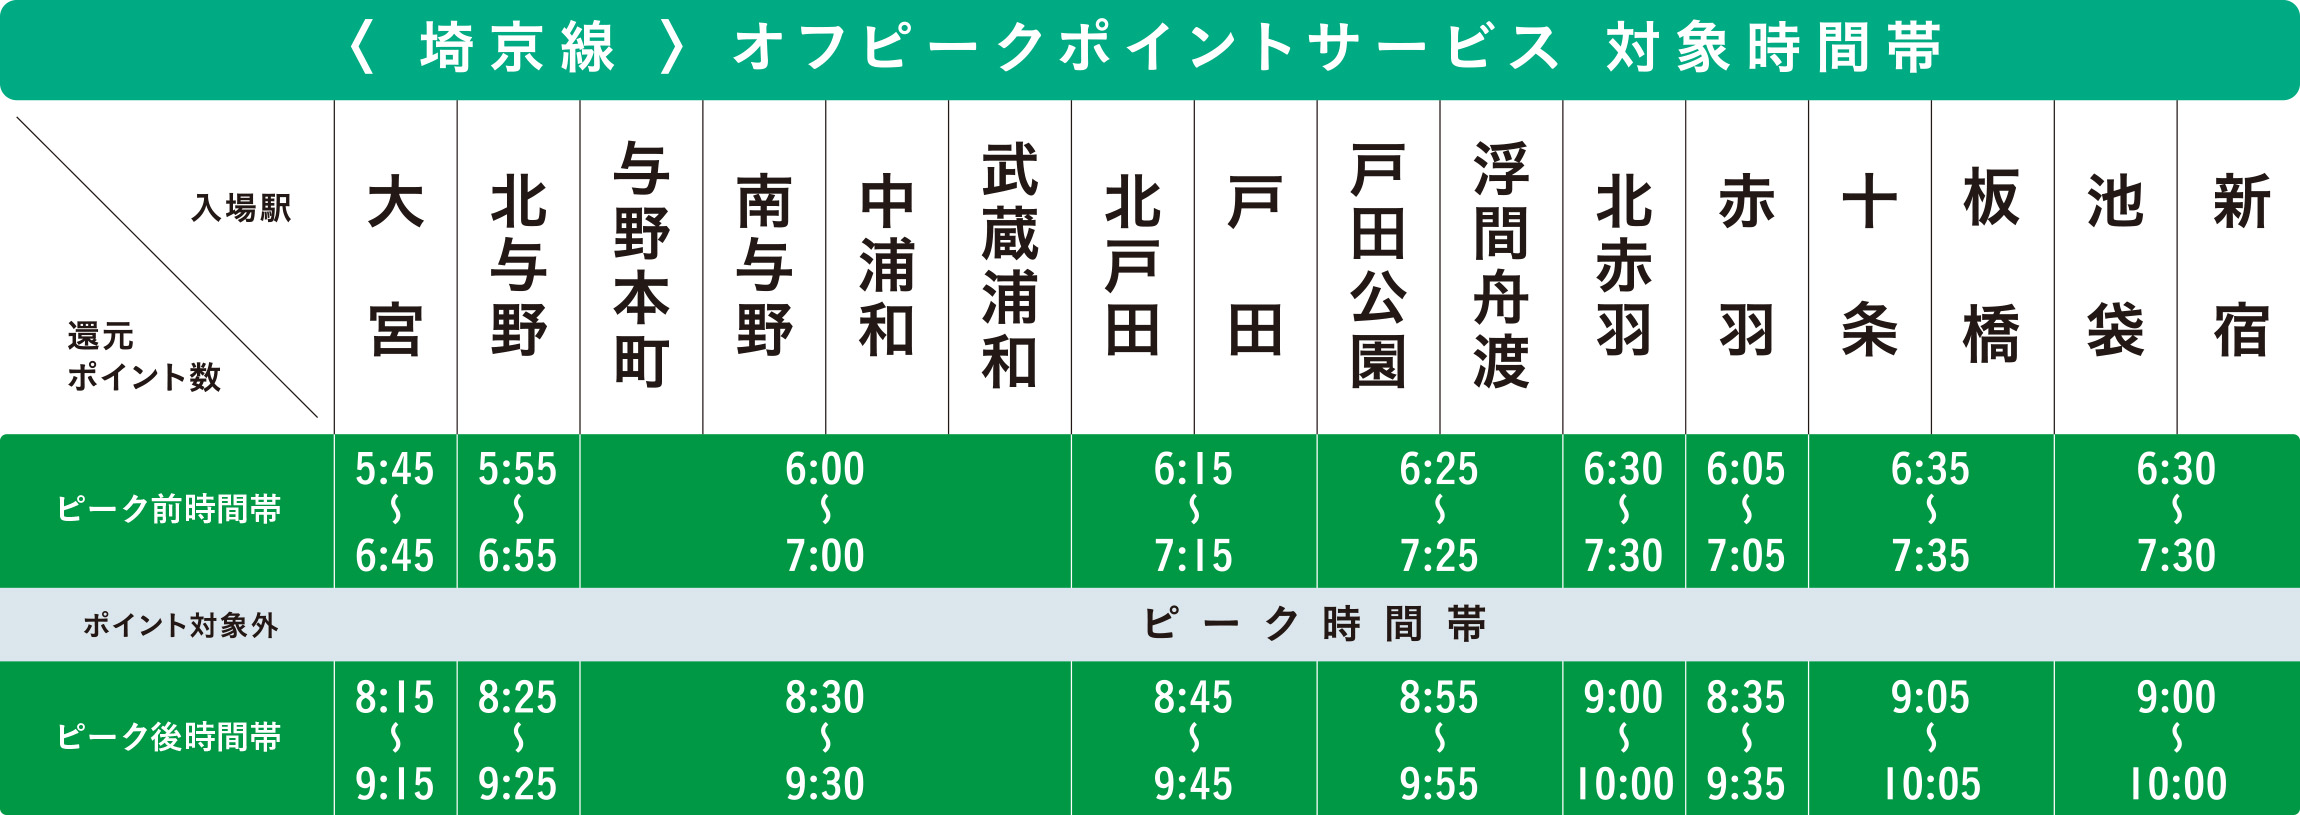 埼京線オフピークポイントサービス対象時間帯